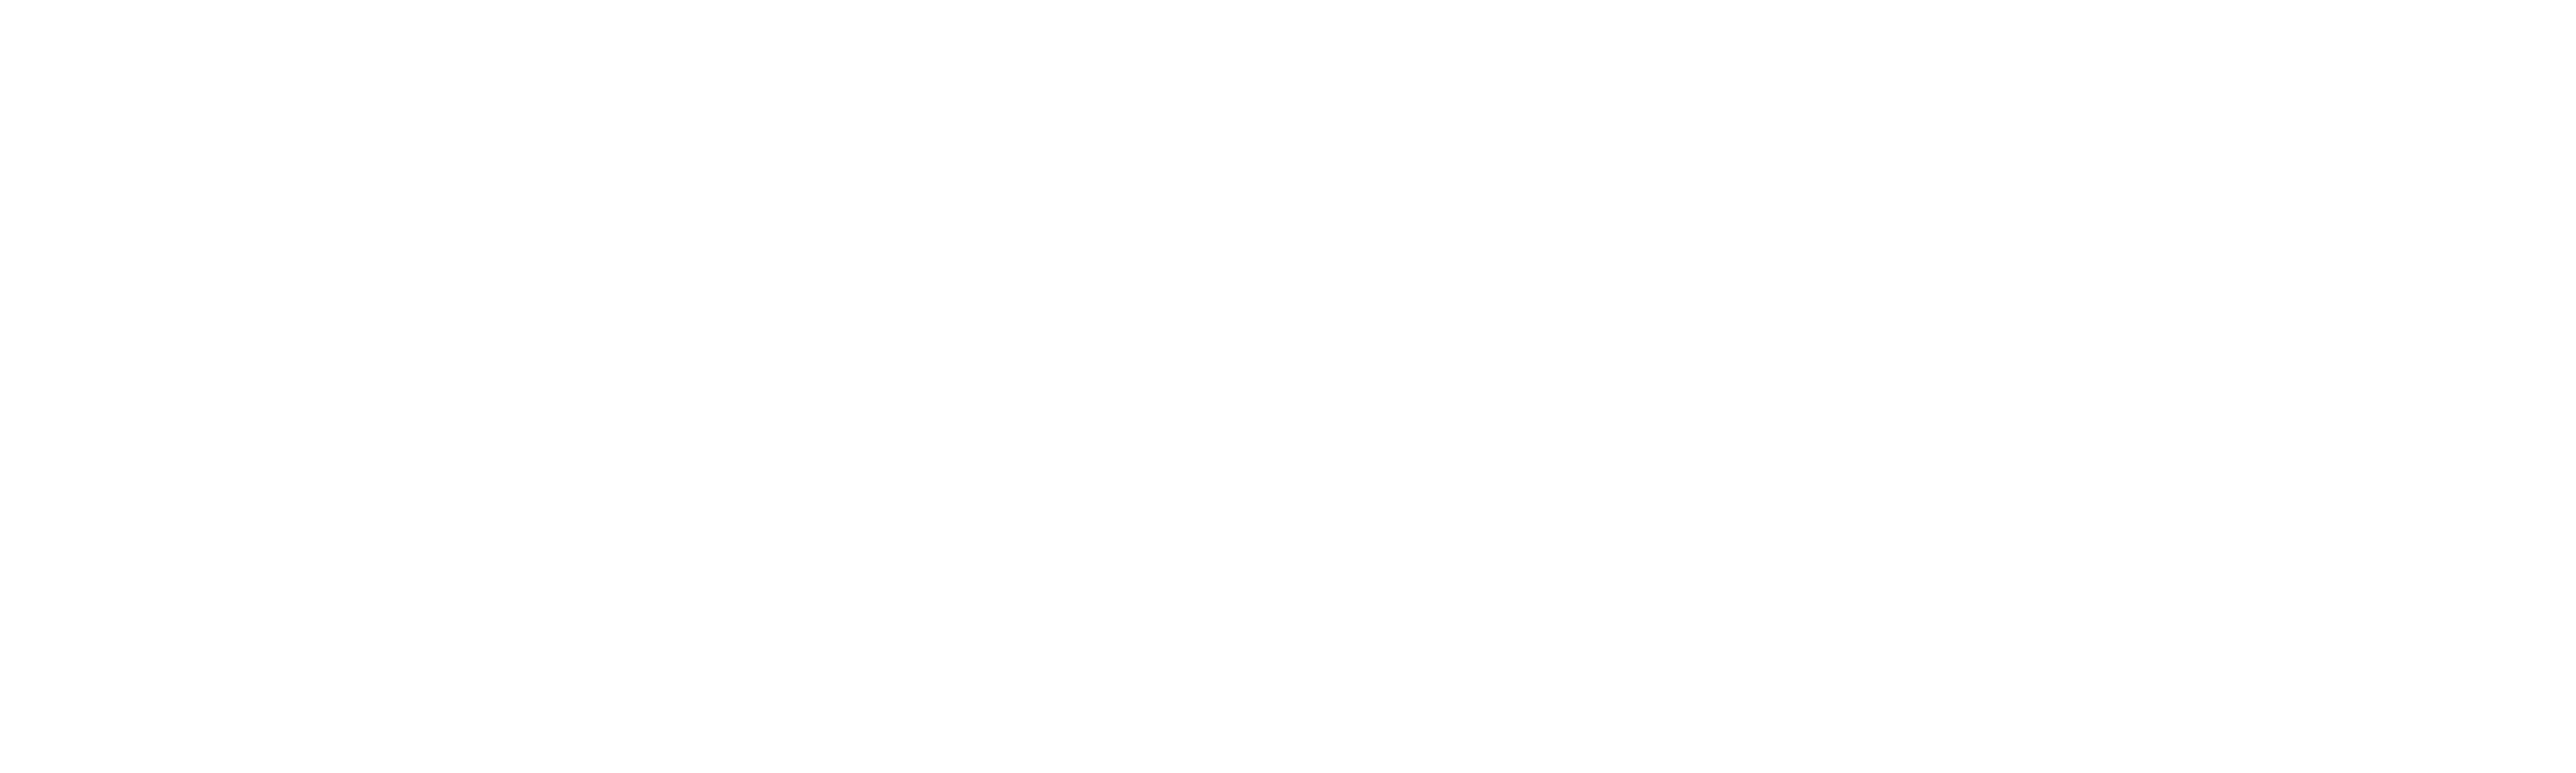 Cred Peace logo_horizontal white